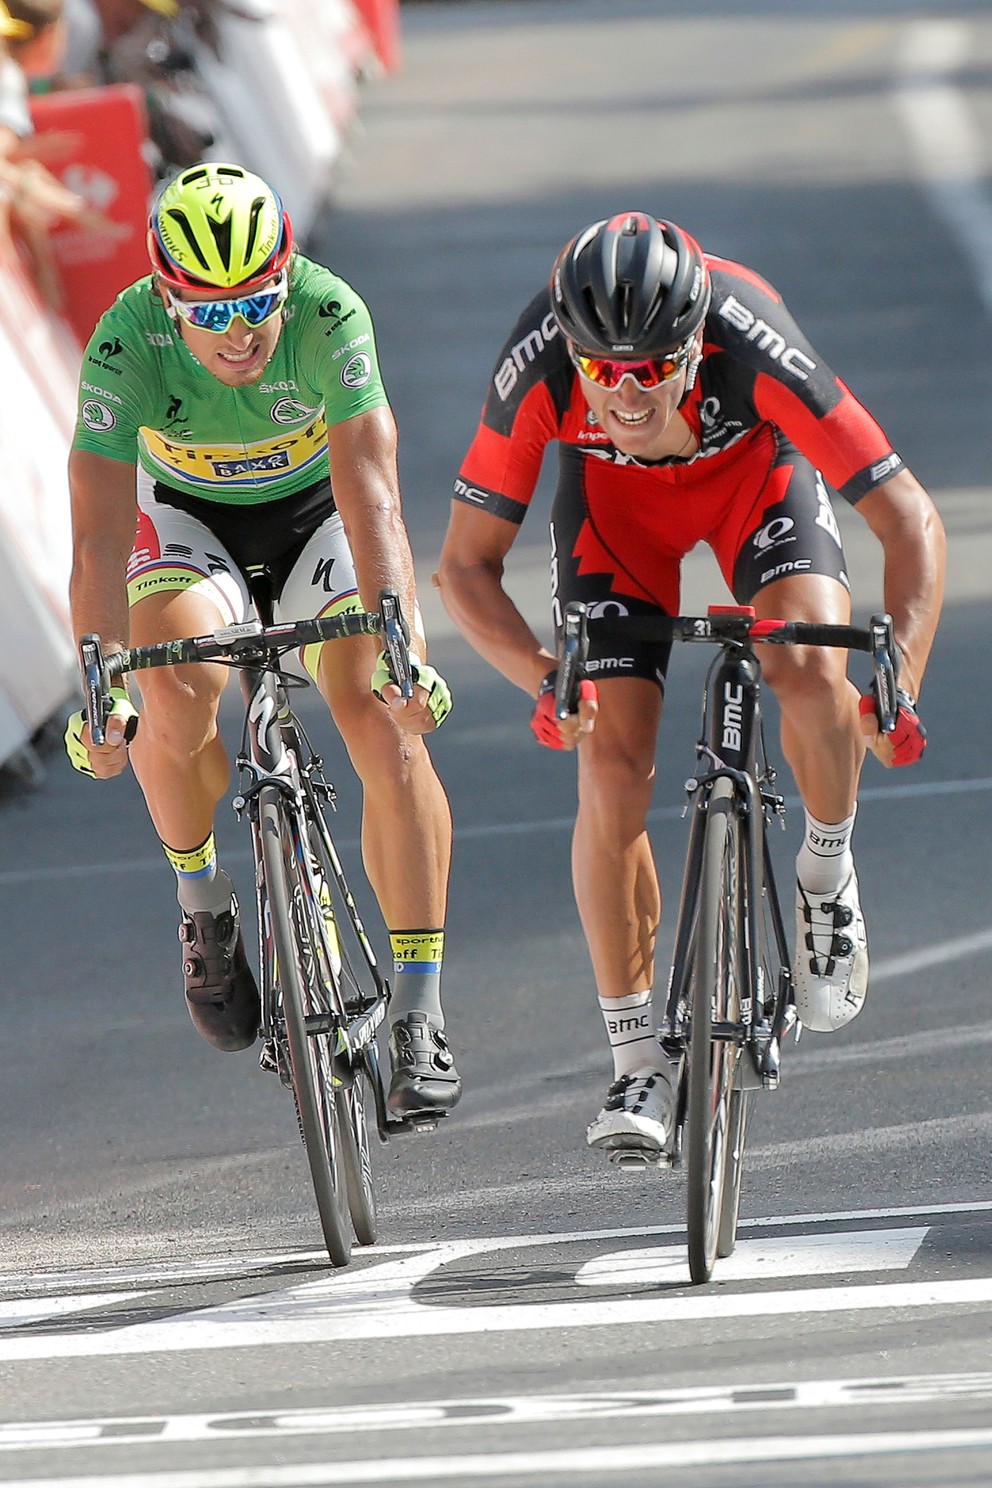 Etapu na Tour de France ovládol Greg van Avermaet dosiaľ jediný raz. Práve vlani v trinástej etape porazil v záverečnom súboji Petra Sagana.